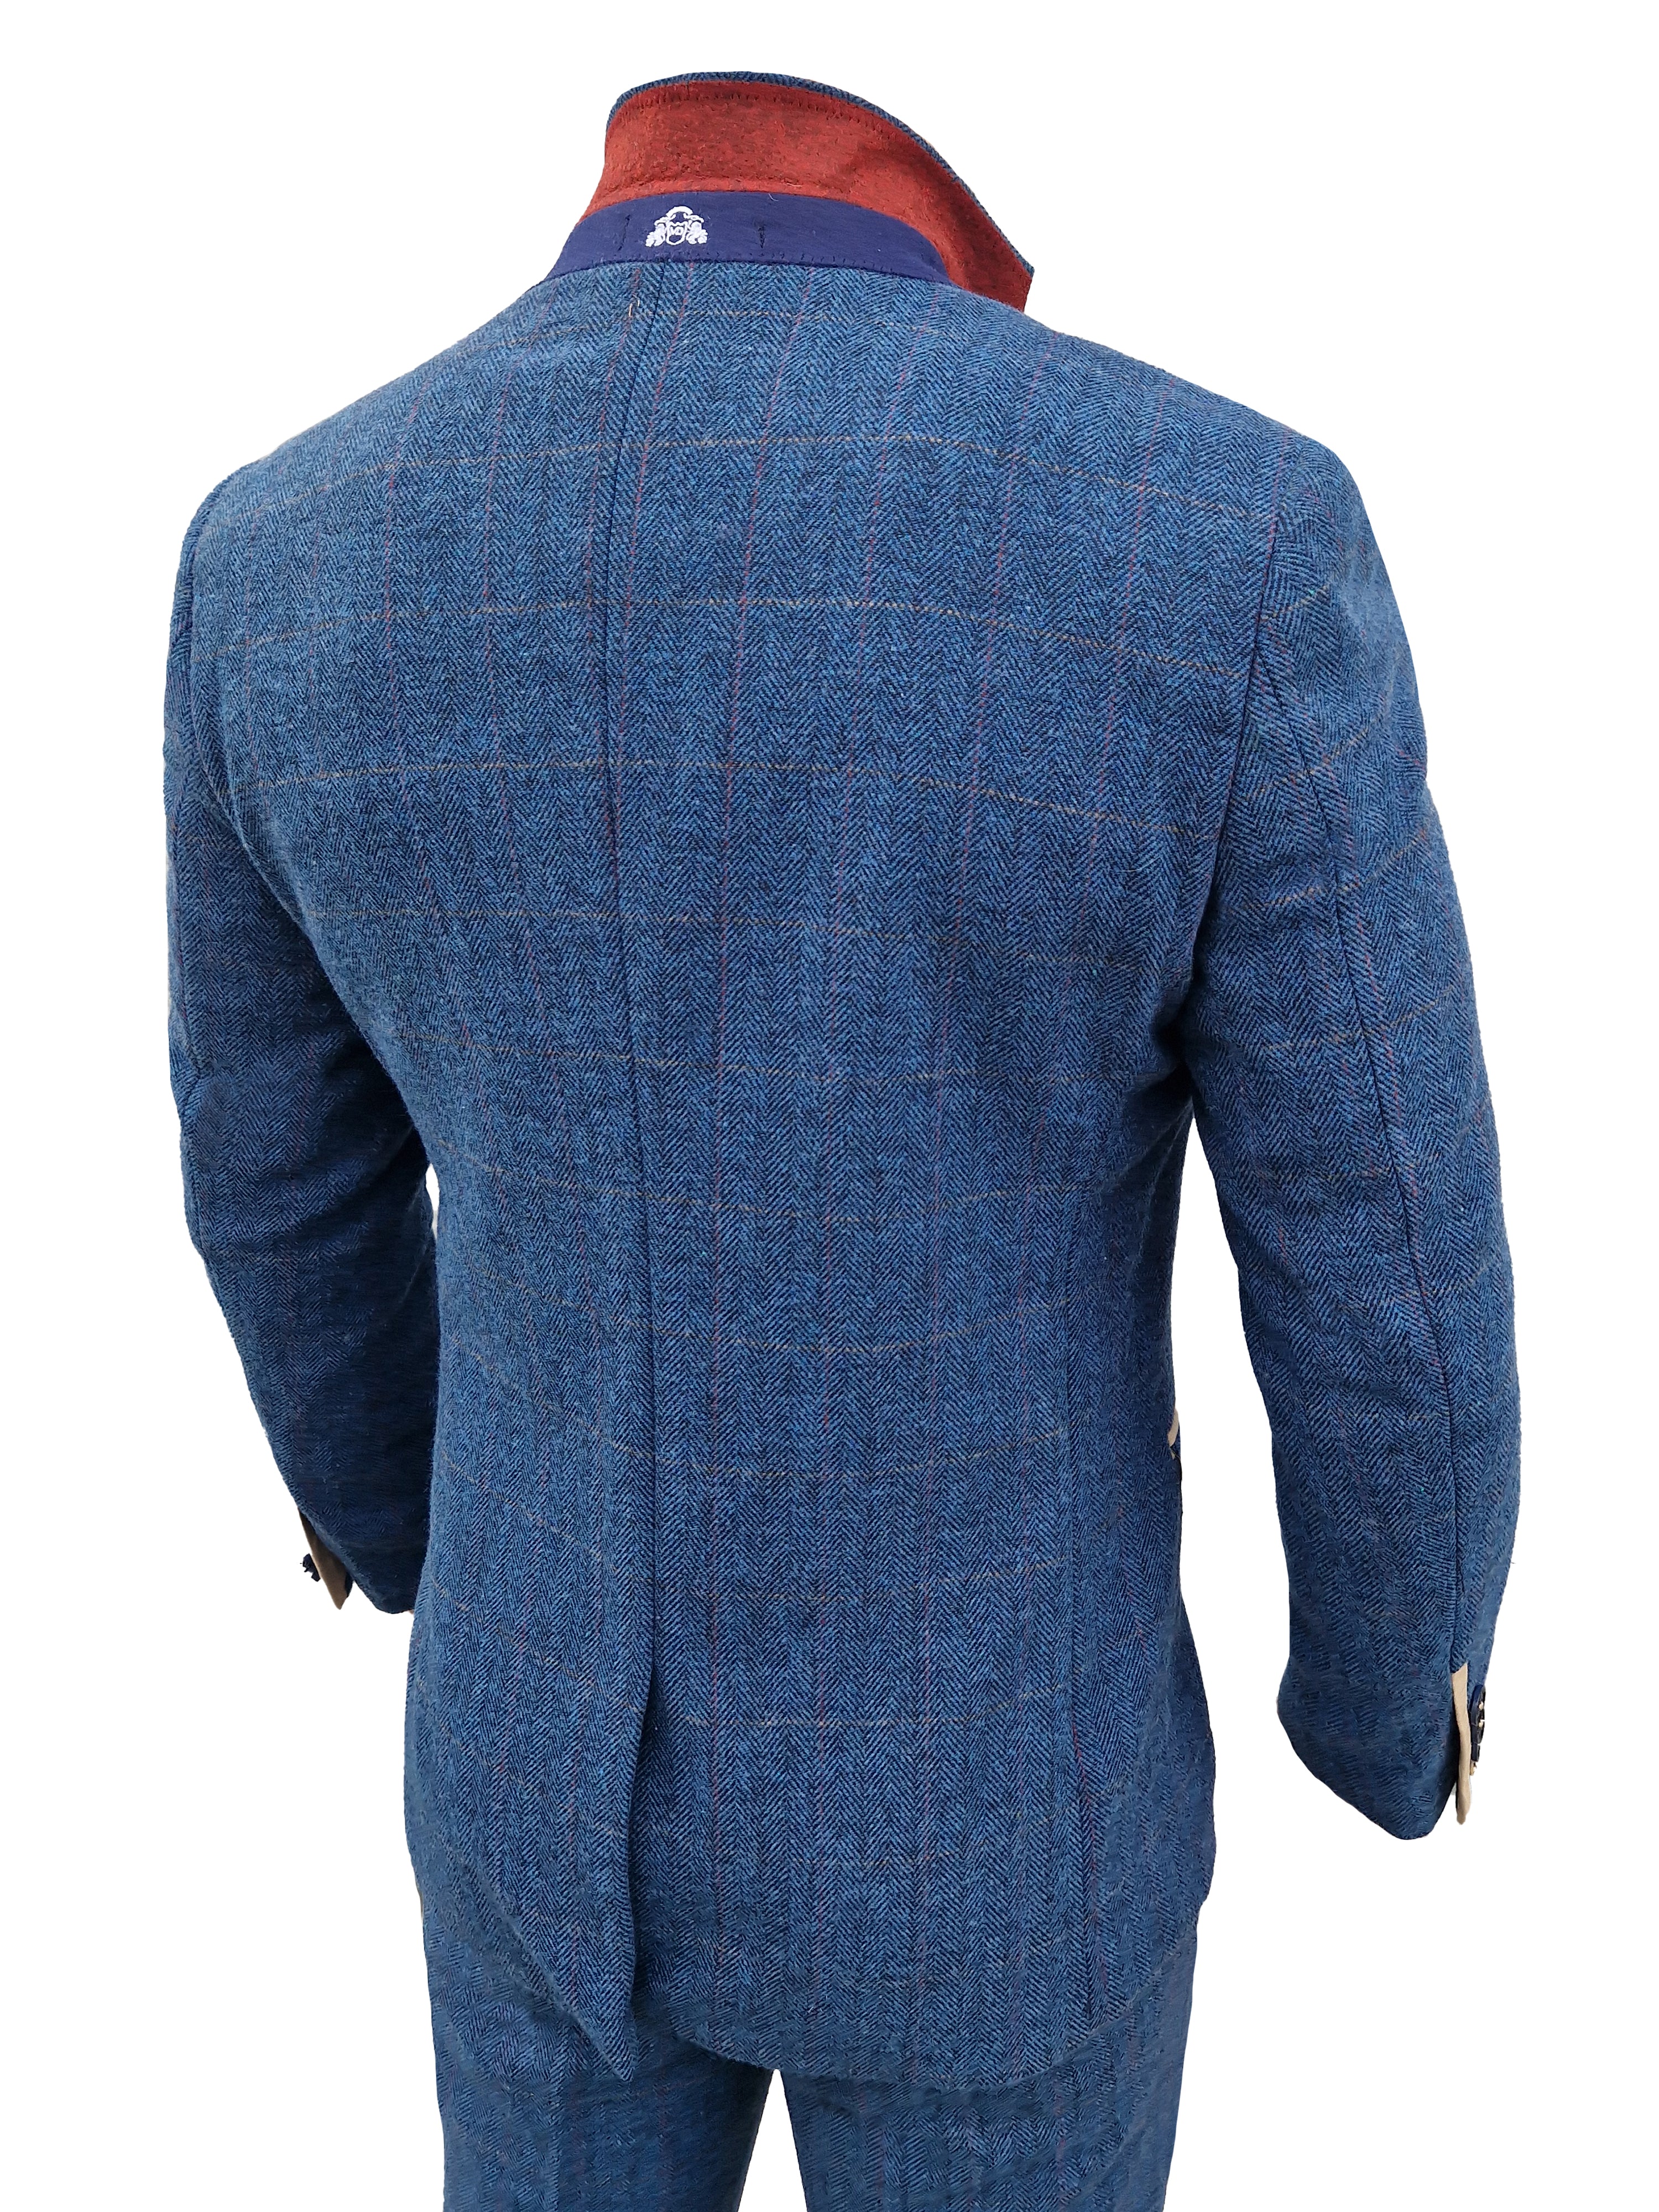 Dreiteiliger Anzug Dion blau Fischgrätmuster - driedelig pak